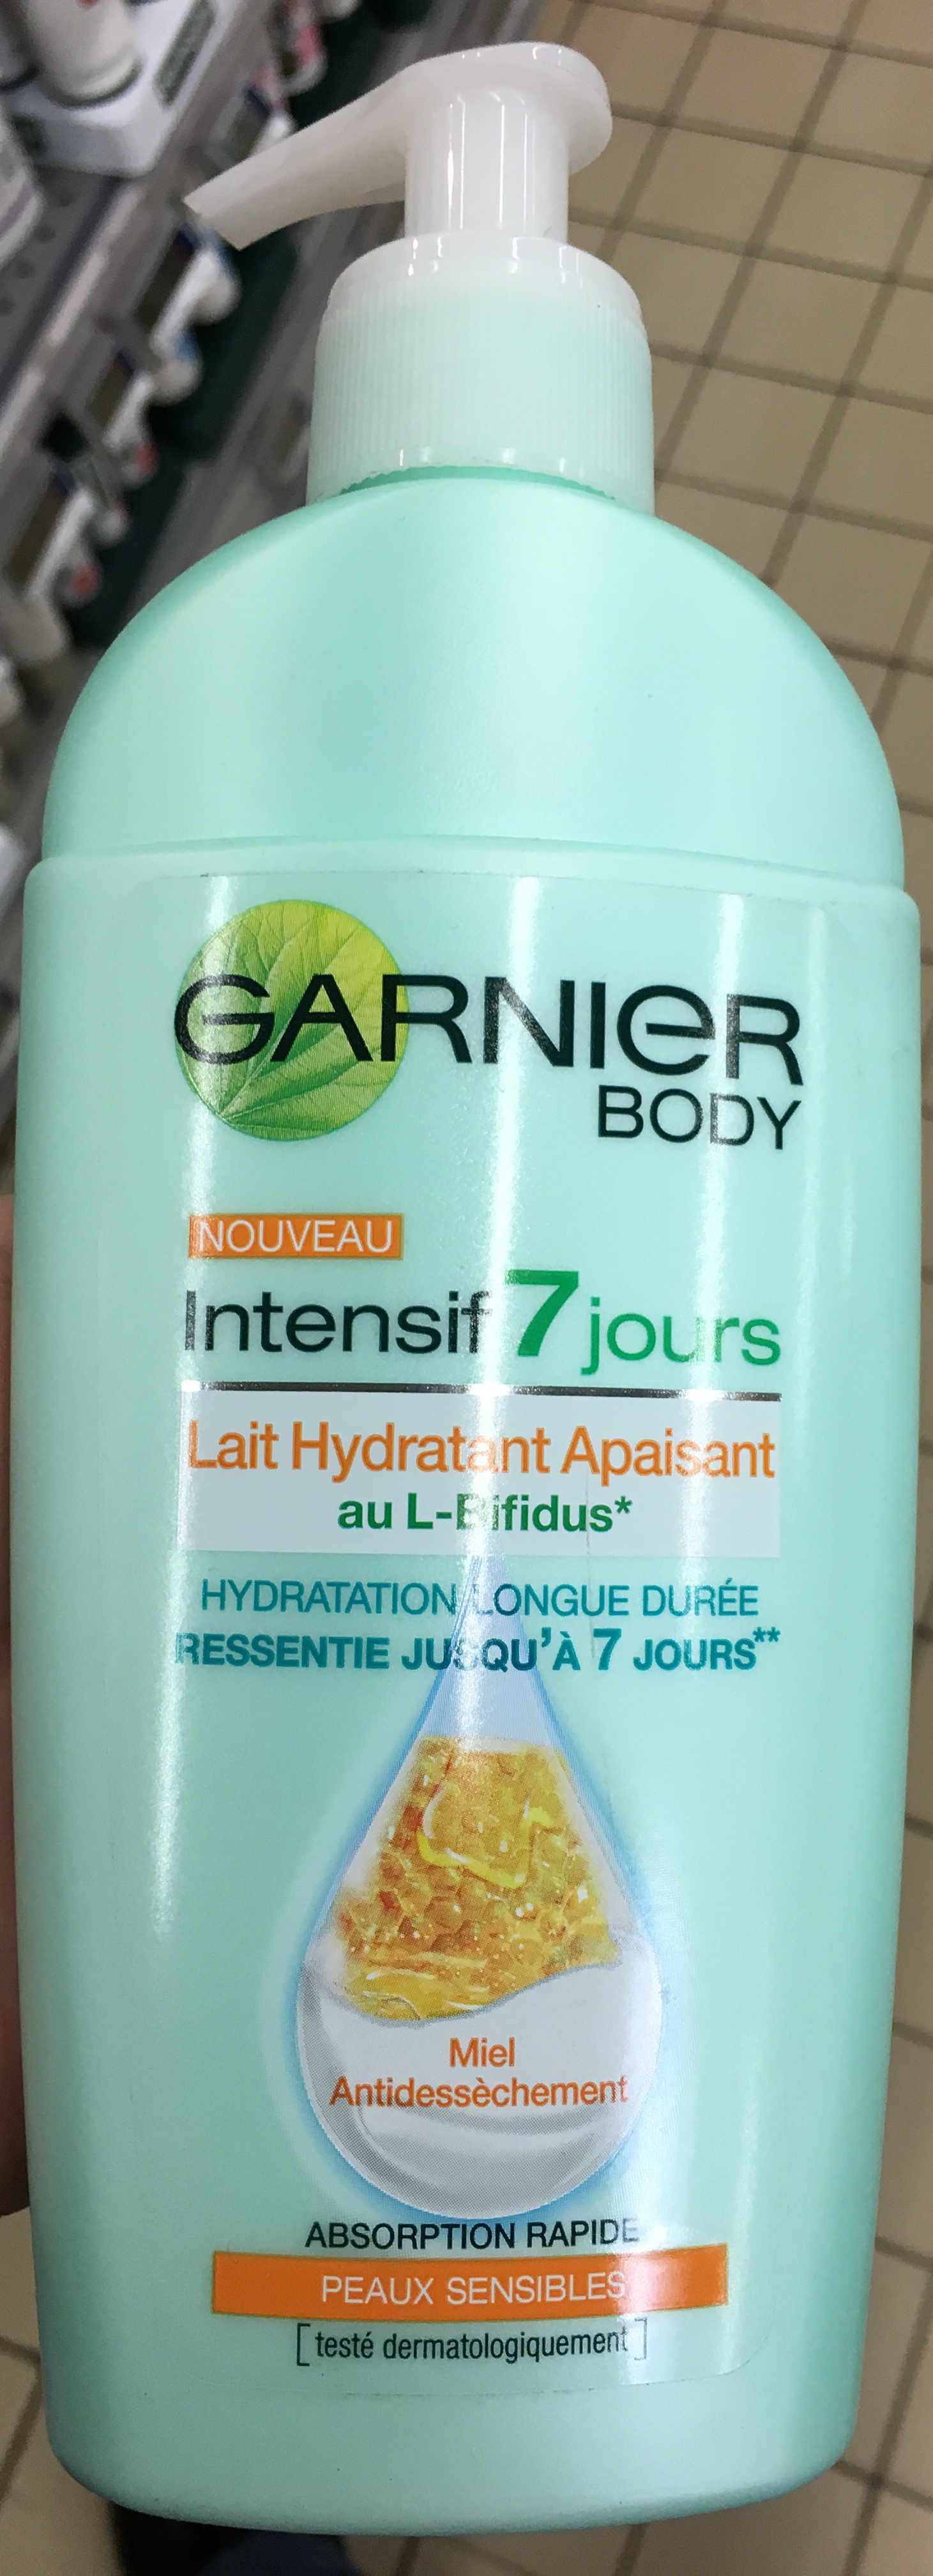 Intensif 7 jours Lait Hydratant Apaisant au L-Bifidus - Produit - fr